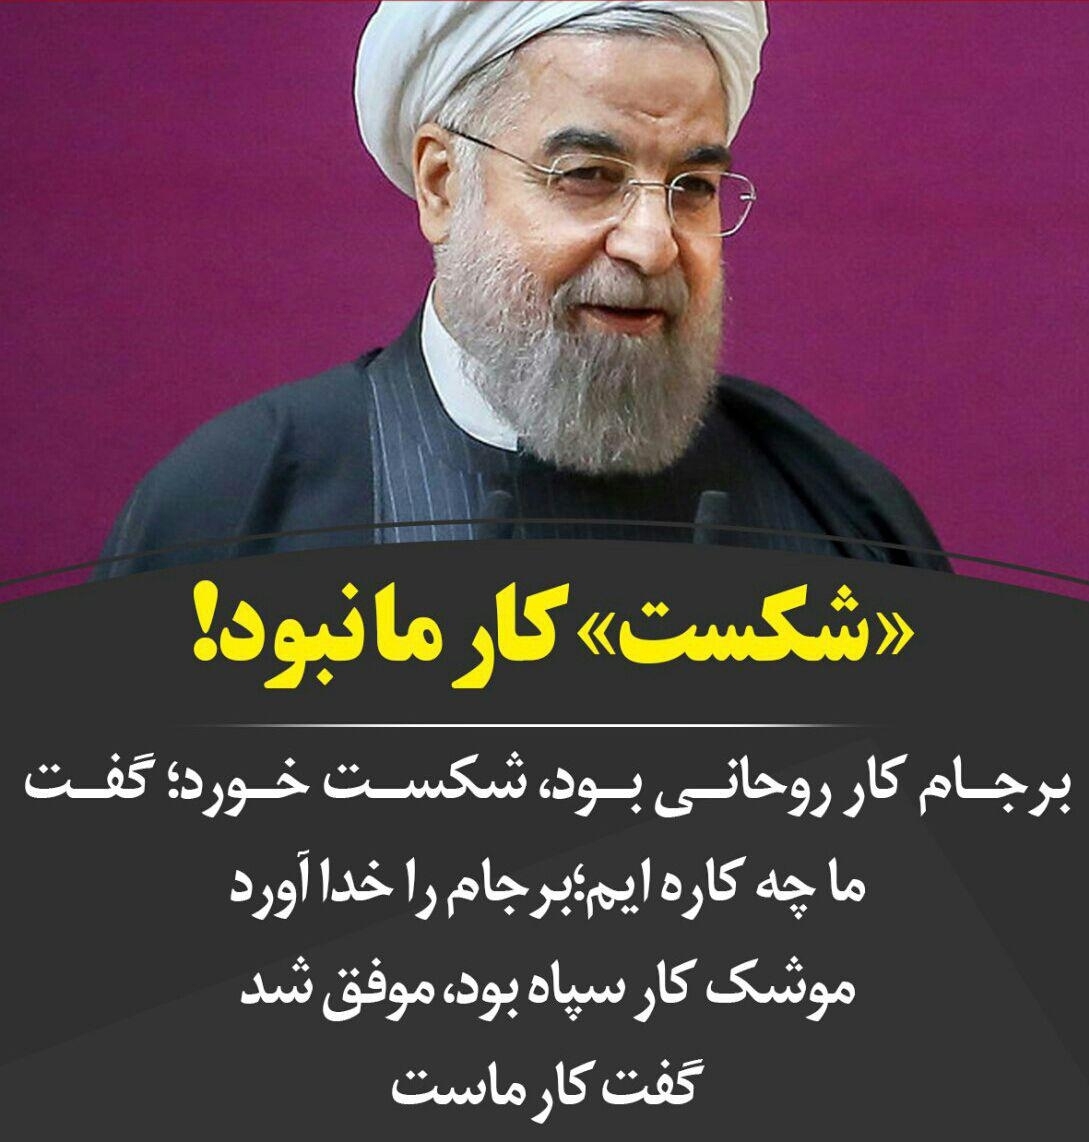 این همان ماهیت انقلاب است که امنیت ملی ما ایرانیان است.